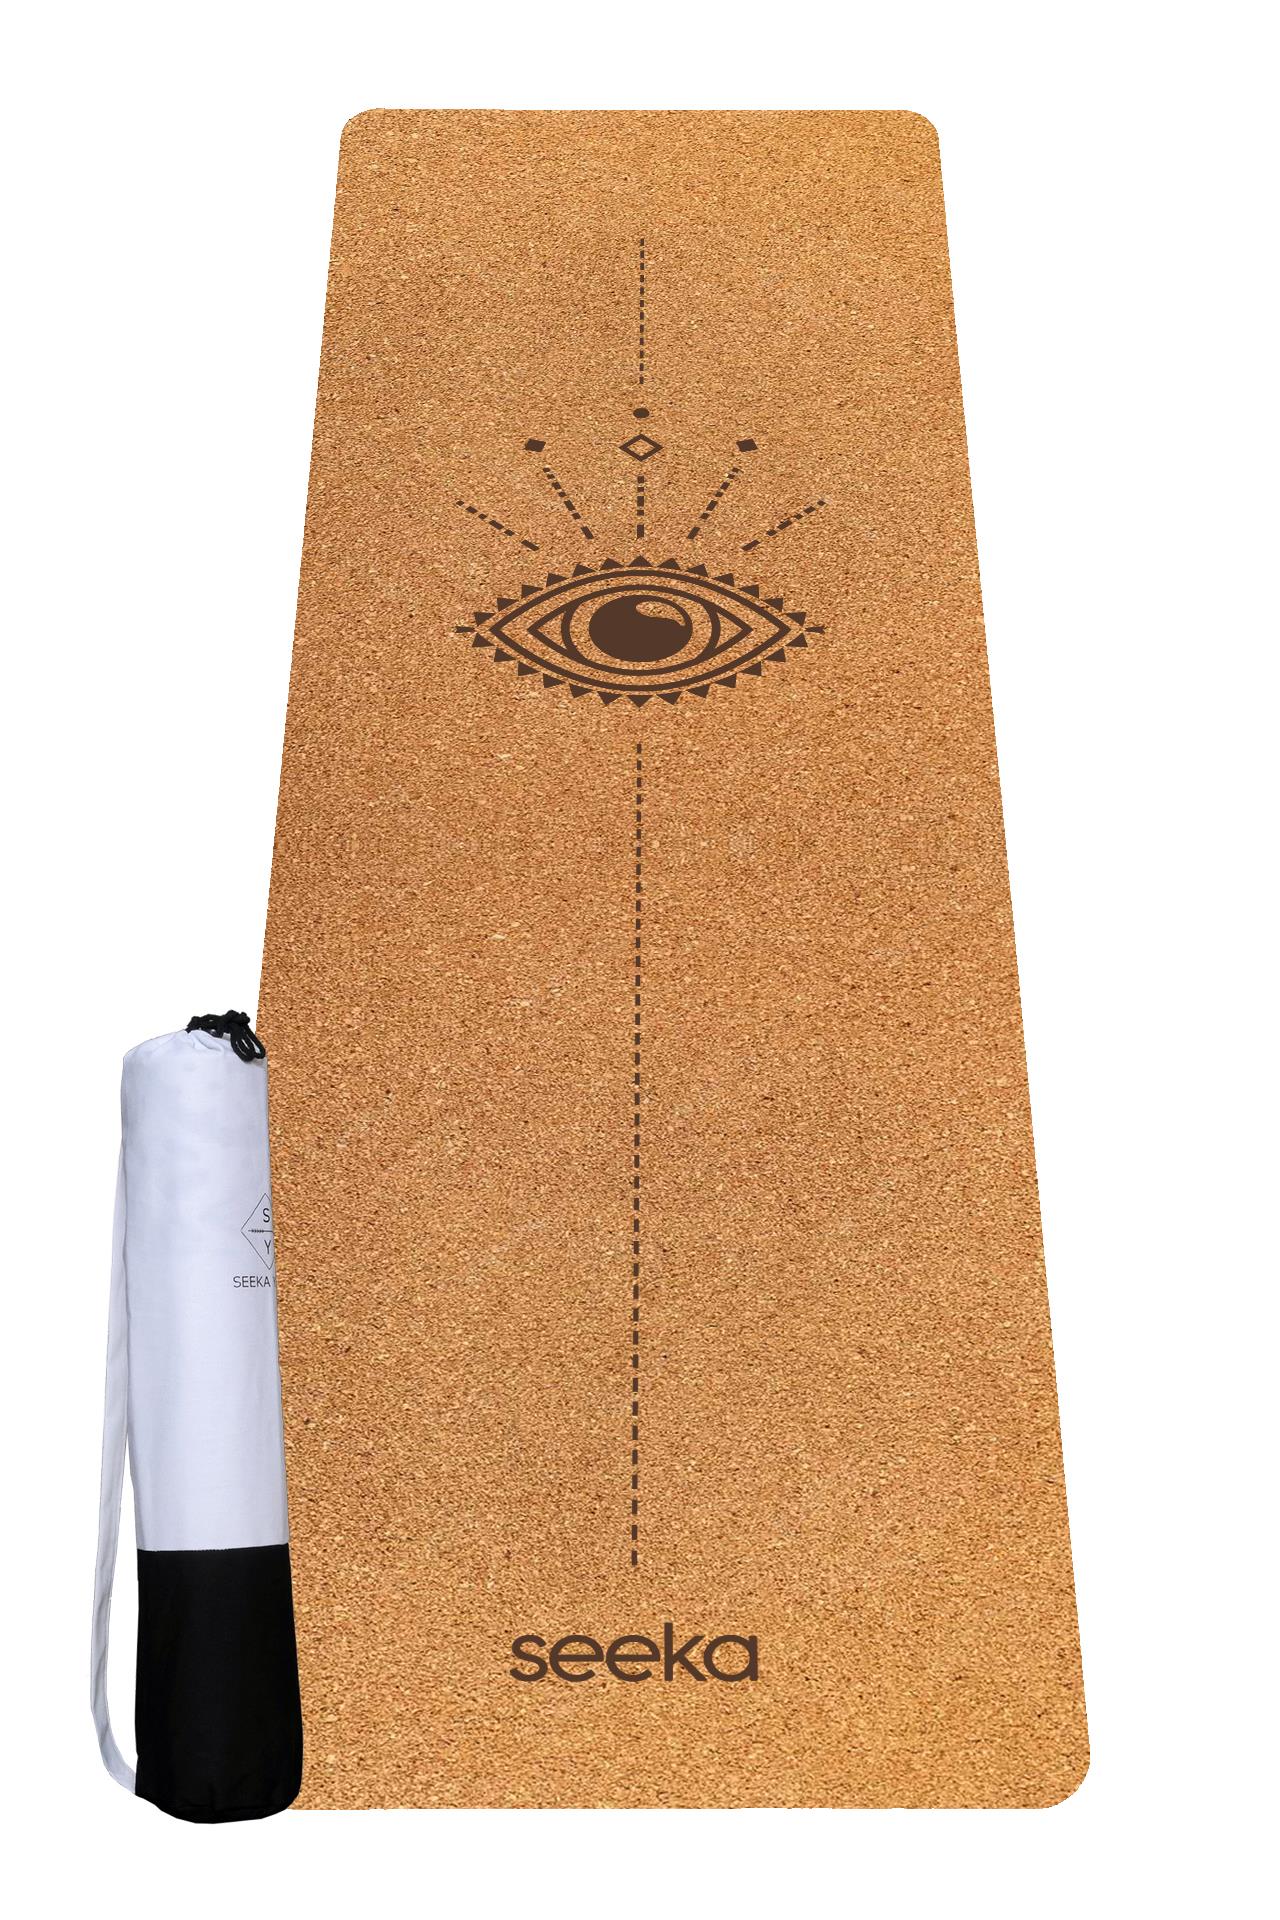 Seeka Yoga Cork Serisi Eye Yoga Matı